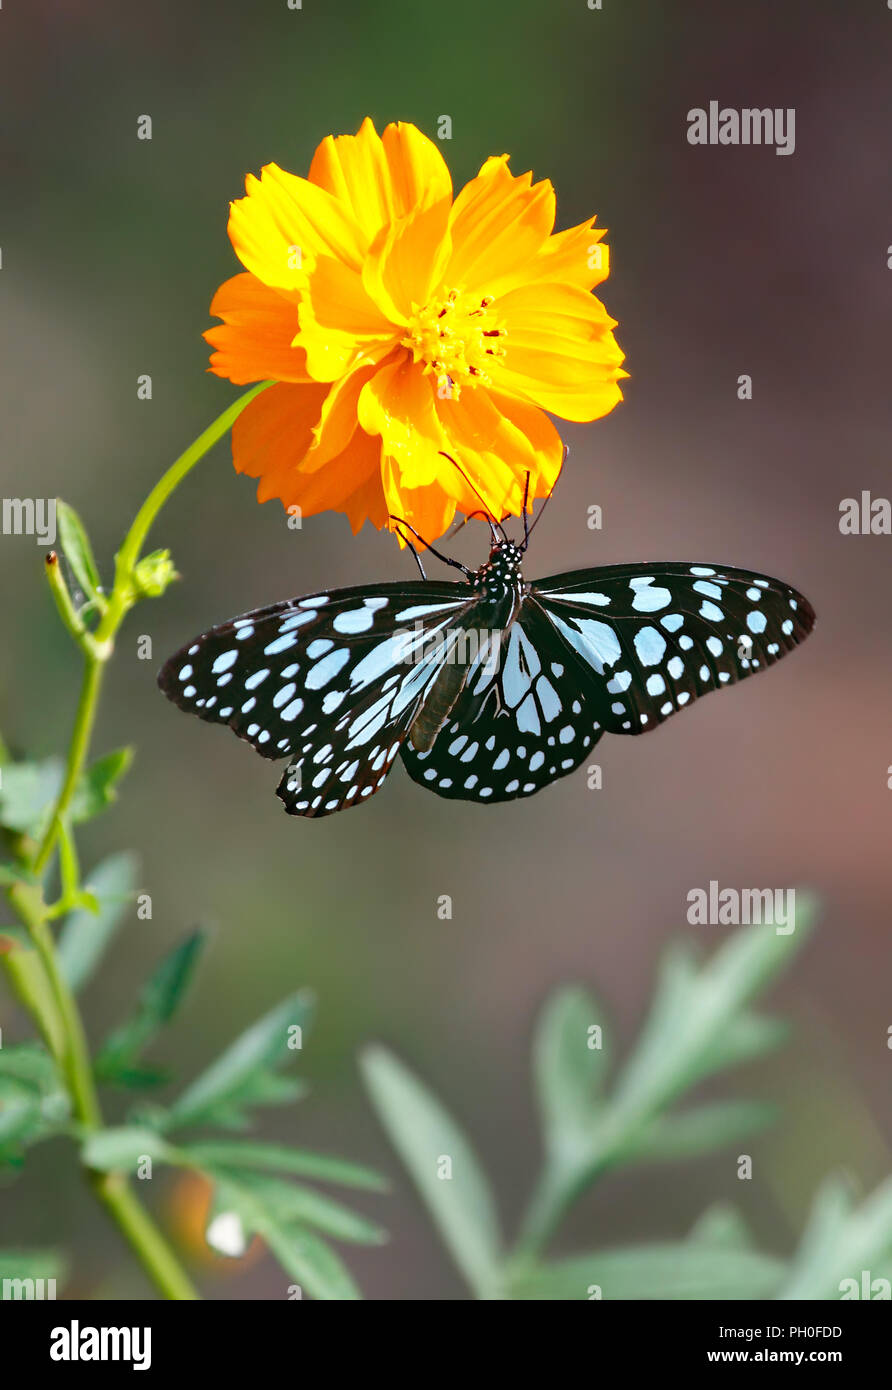 Tigre azul o mariposas Danaid Tirumala limniace colgando de un cosmos naranja flor. Foto de stock